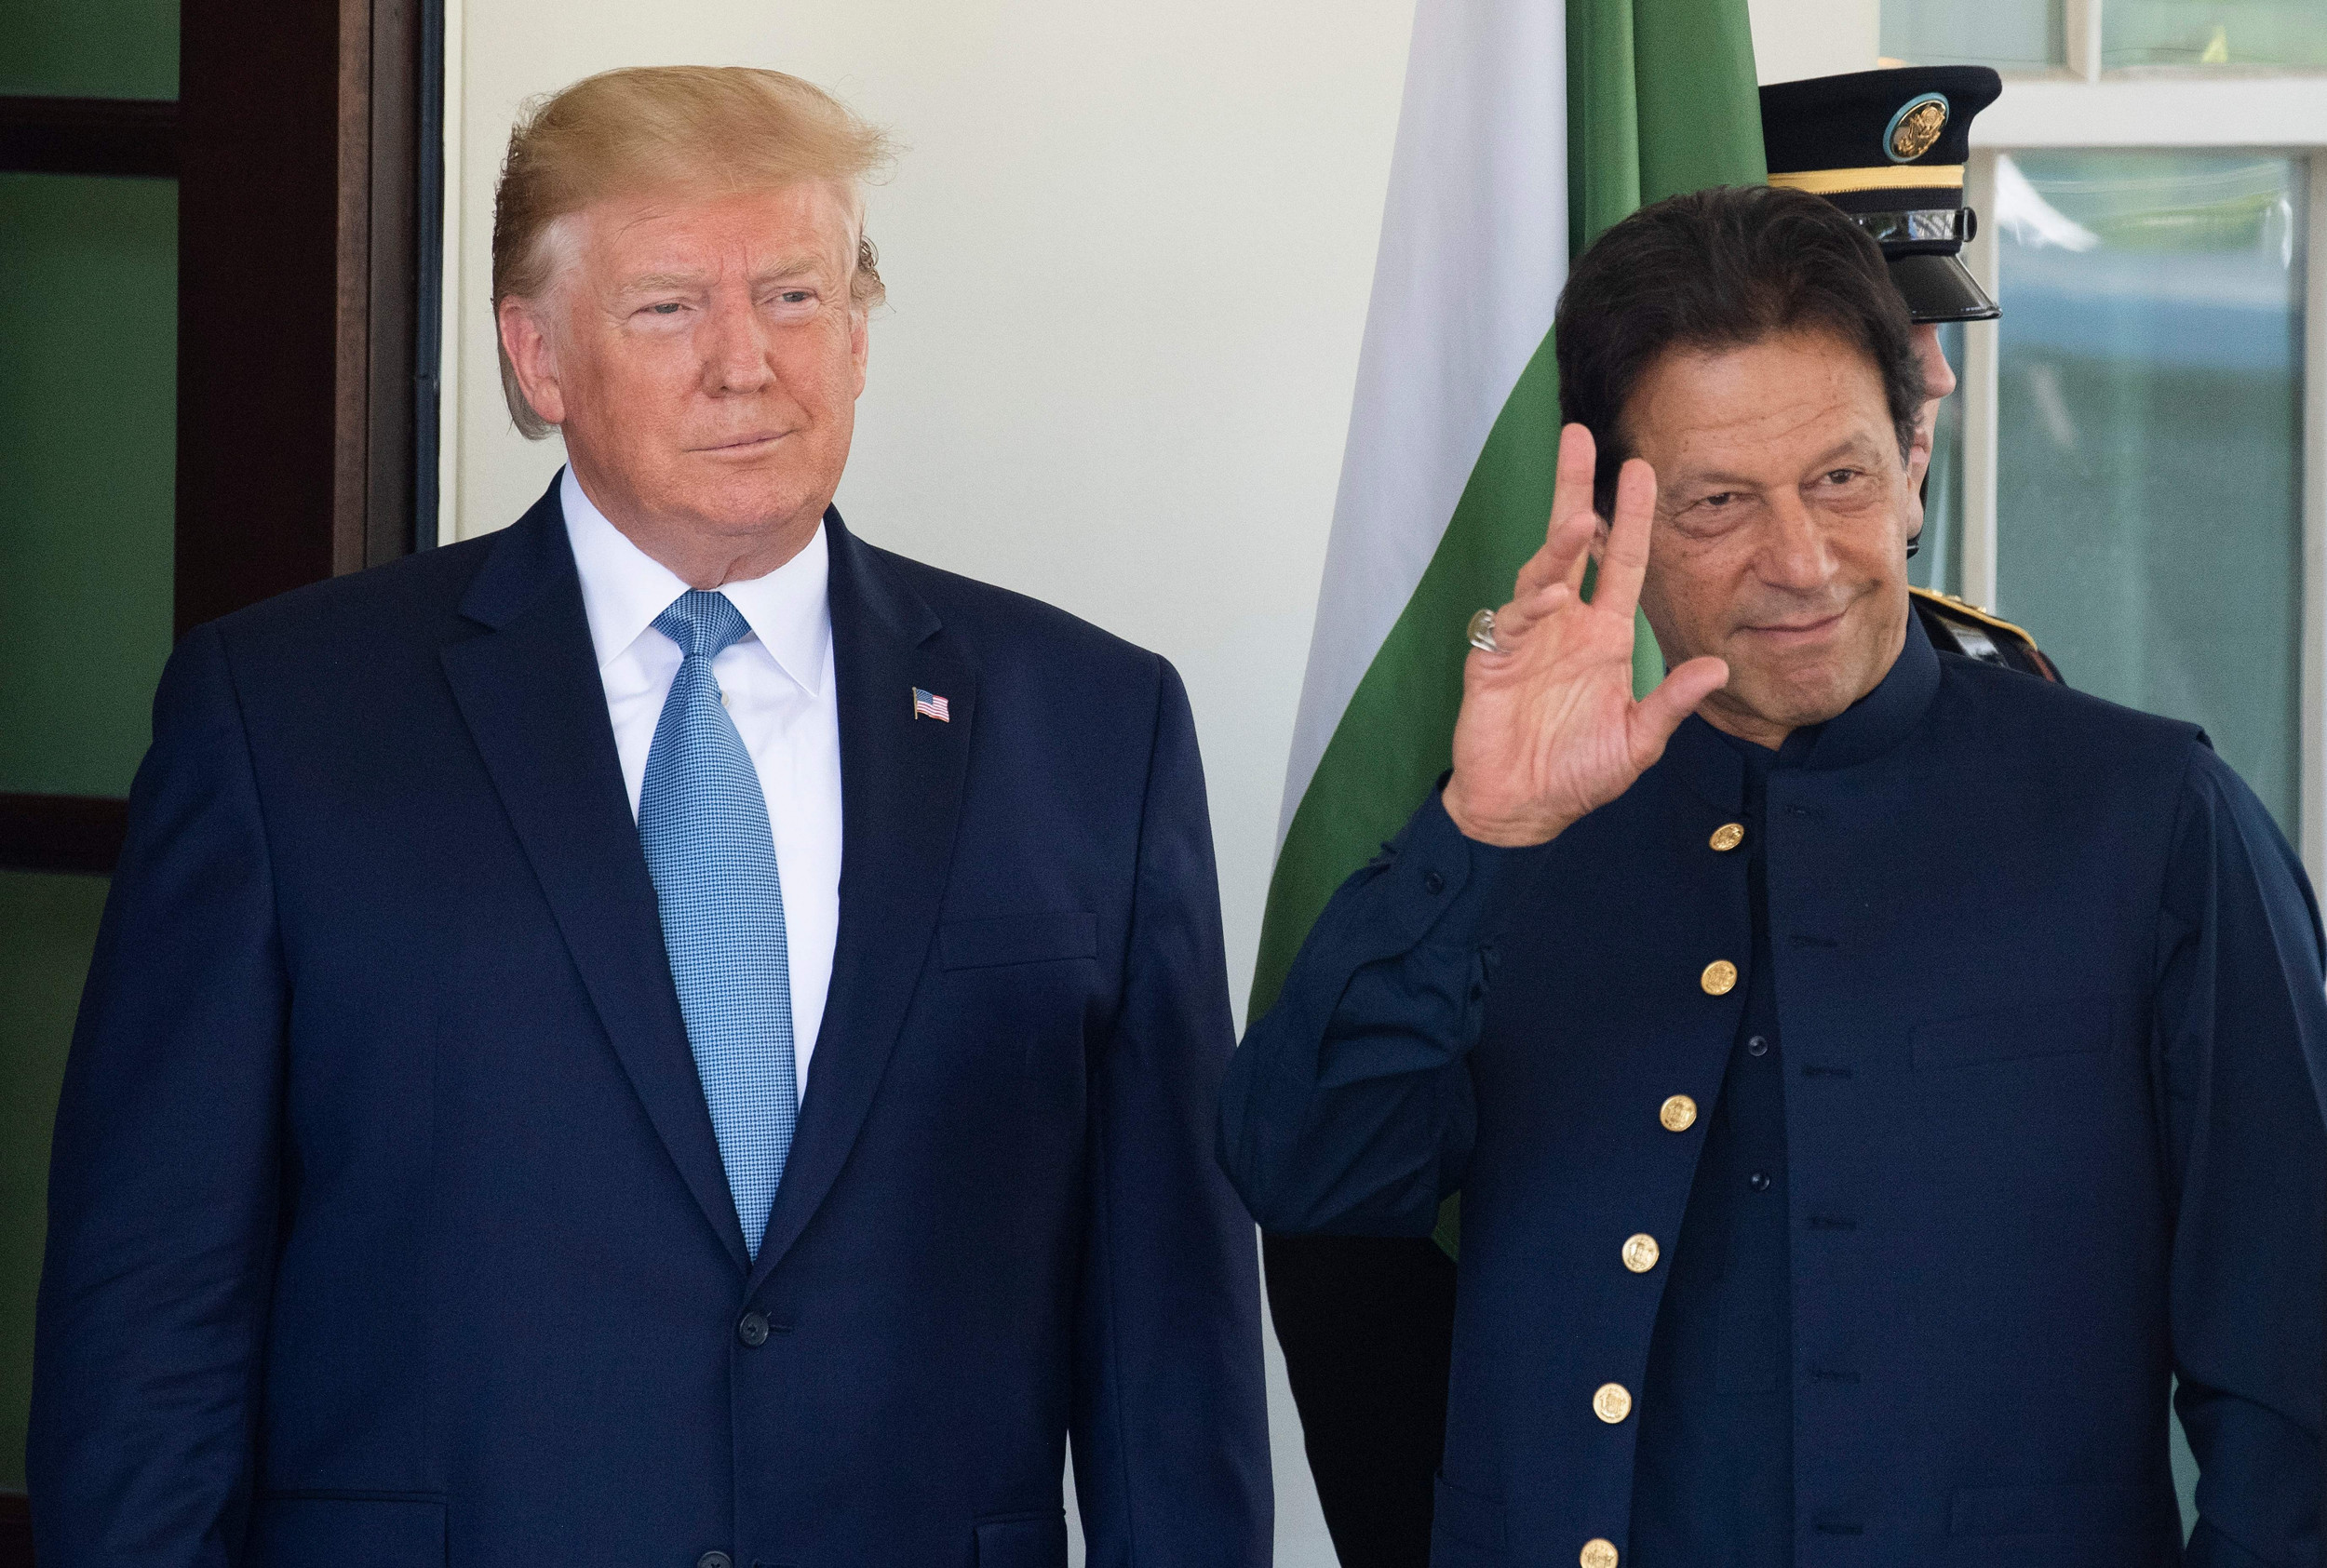 अमेरिकी राष्ट्रपति ट्रम्पले कश्मीर विवादमा भारत र पाकिस्तानलाई सहयोग गर्ने